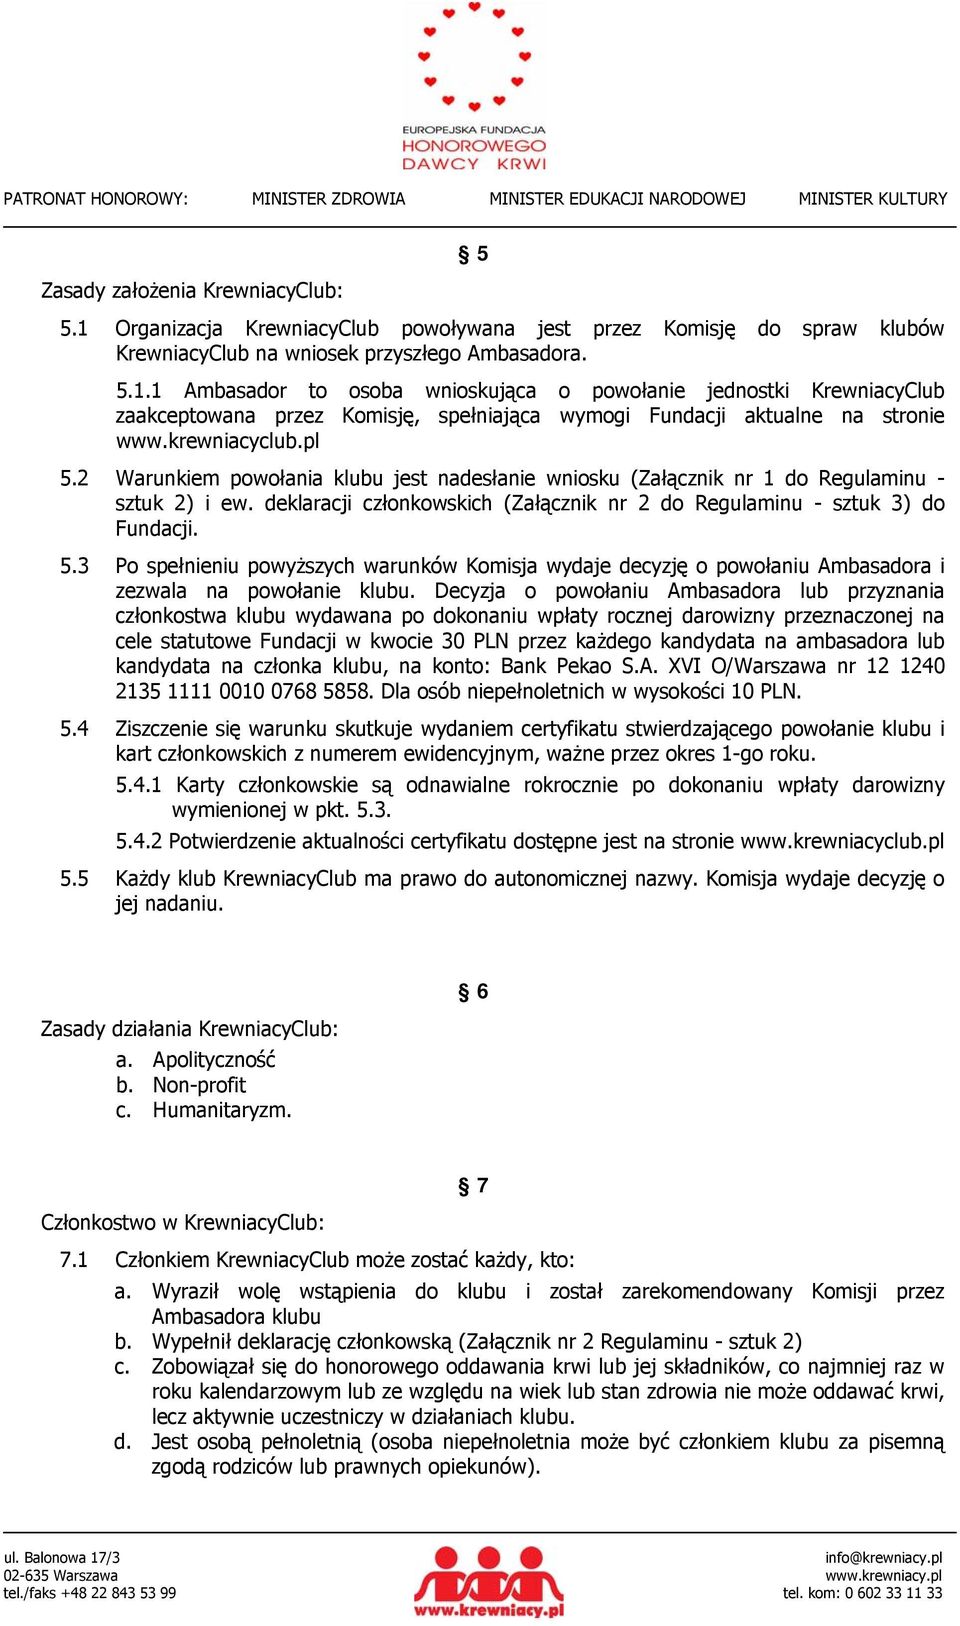 Decyzja o powołaniu Ambasadora lub przyznania członkostwa klubu wydawana po dokonaniu wpłaty rocznej darowizny przeznaczonej na cele statutowe Fundacji w kwocie 30 PLN przez każdego kandydata na